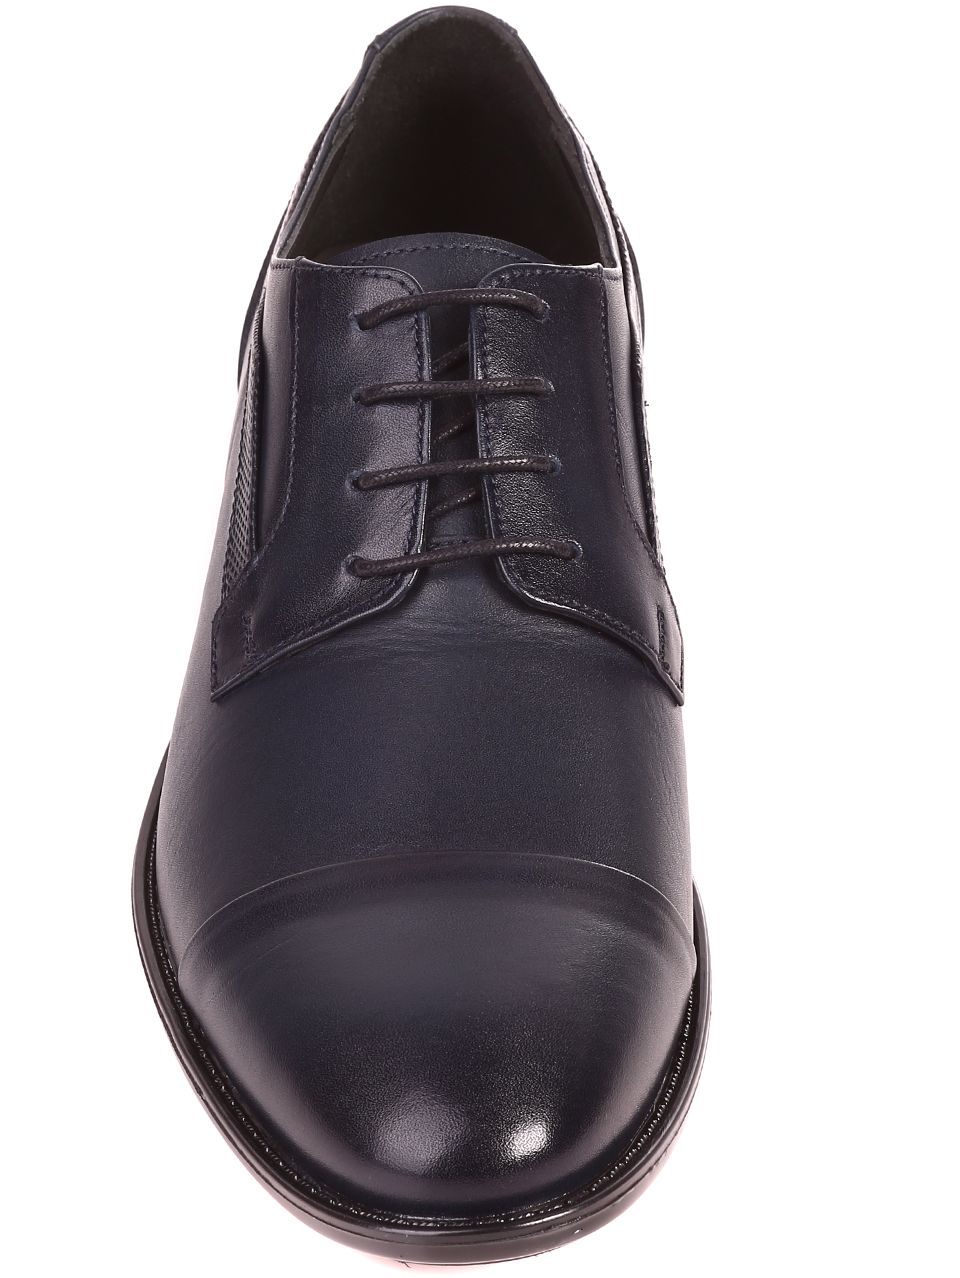 Елегантни мъжки обувки от естествена кожа 153-5847 navy L